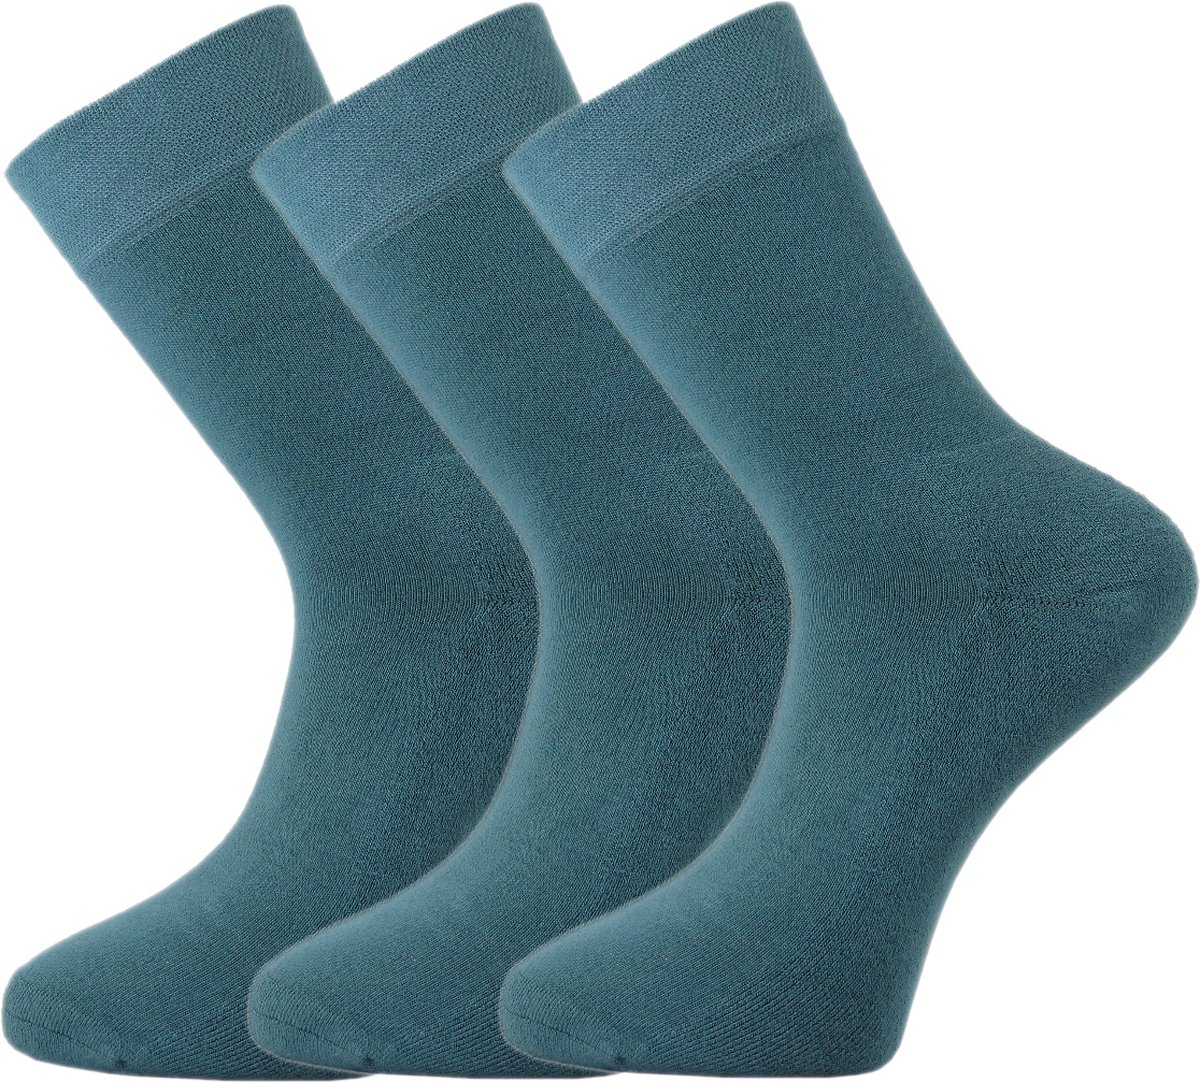 Bamboe sokken - Unisex - 3 paar - Groenblauw - Teal - Maat 35-37 - Zacht en Antibacterieel